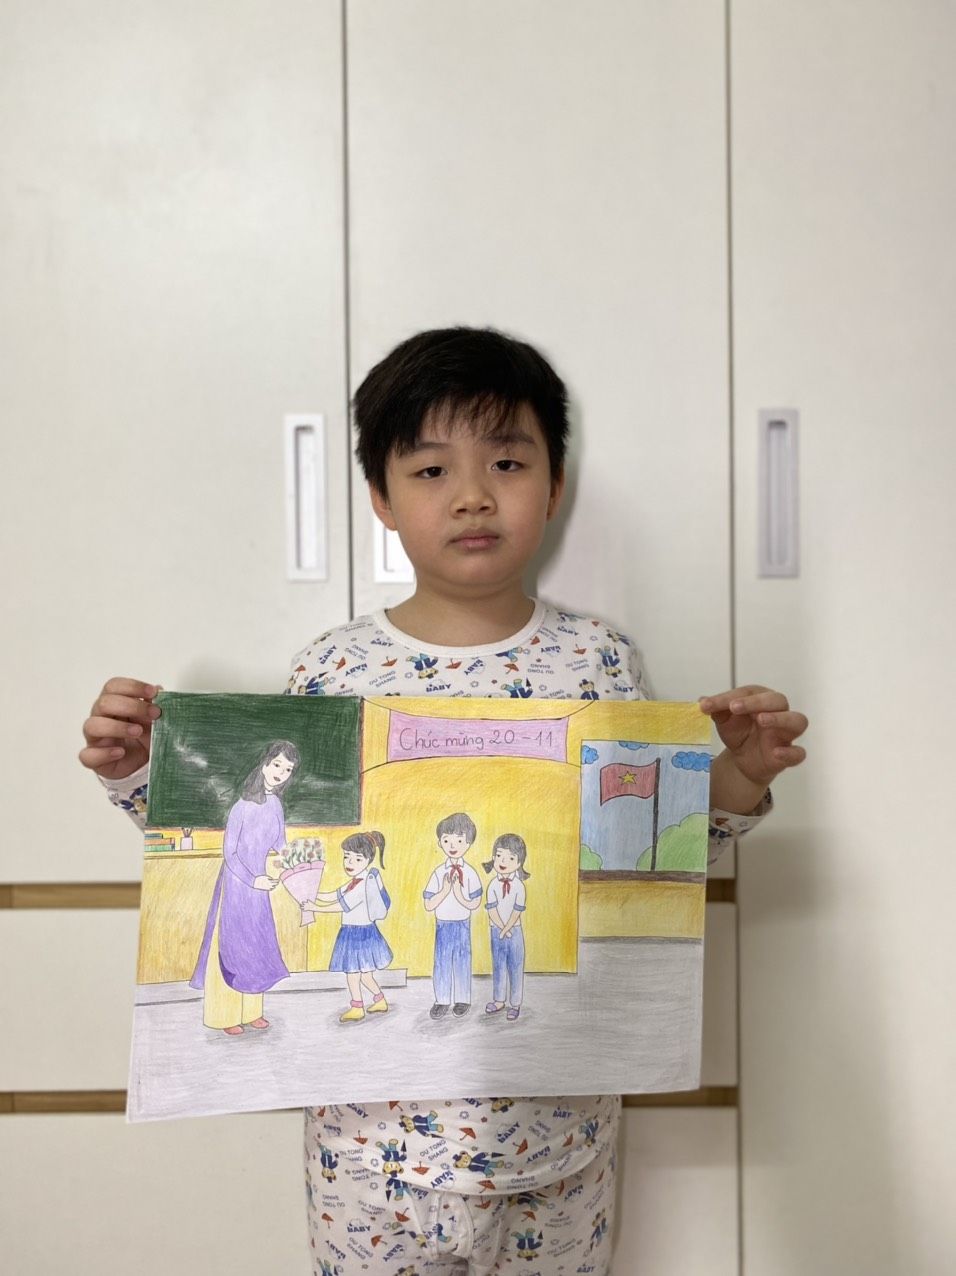 Bài dự thi vẽ của học sinh Nguyễn Thế Gia Bảo - 3A2